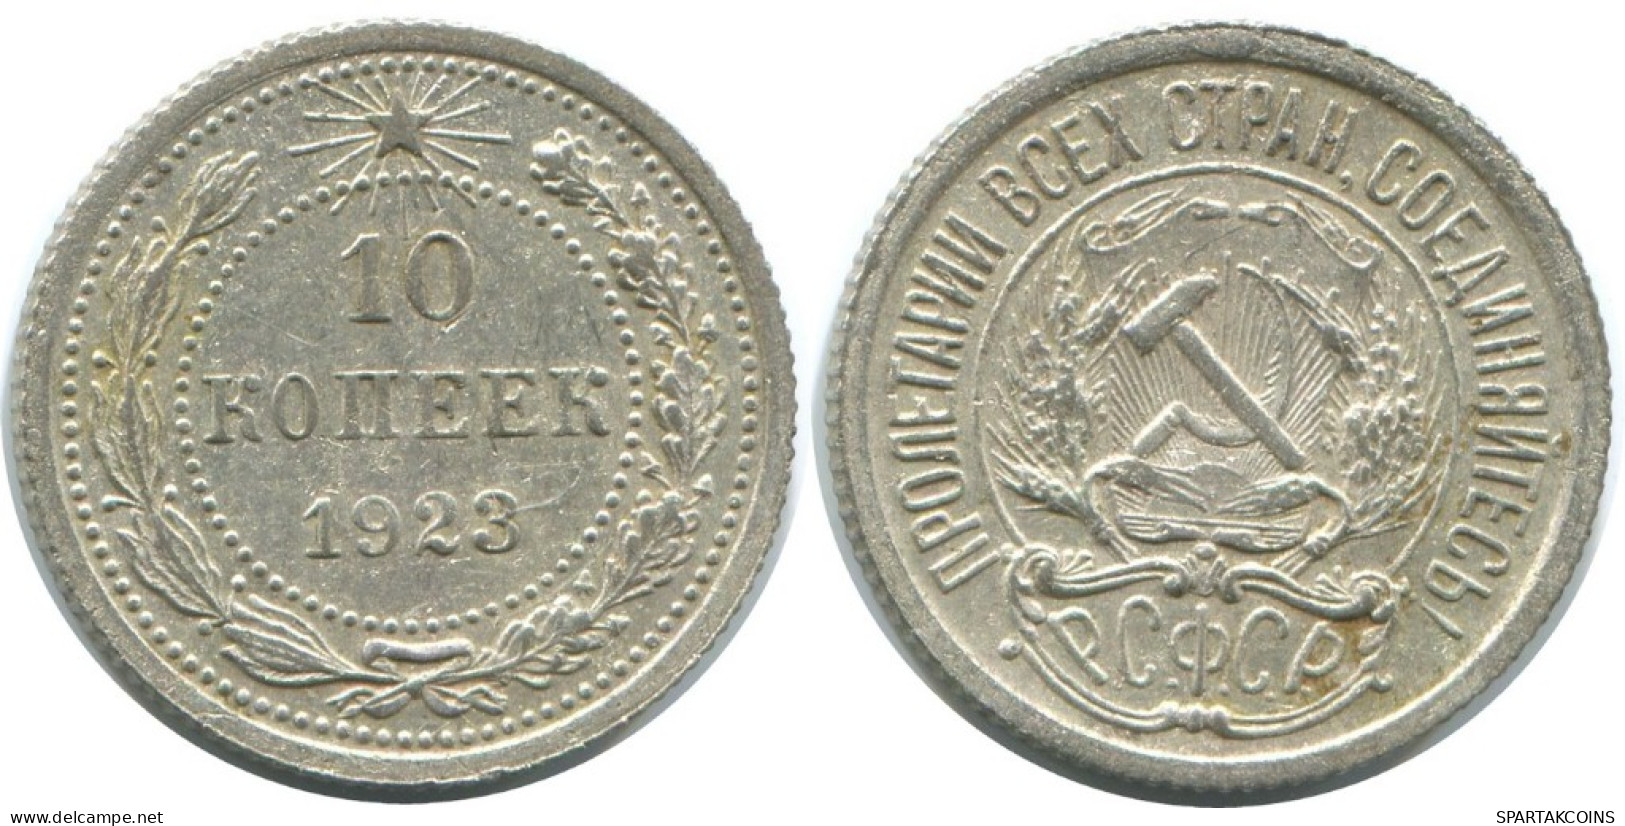 10 KOPEKS 1923 RUSSLAND RUSSIA RSFSR SILBER Münze HIGH GRADE #AE992.4.D.A - Russland